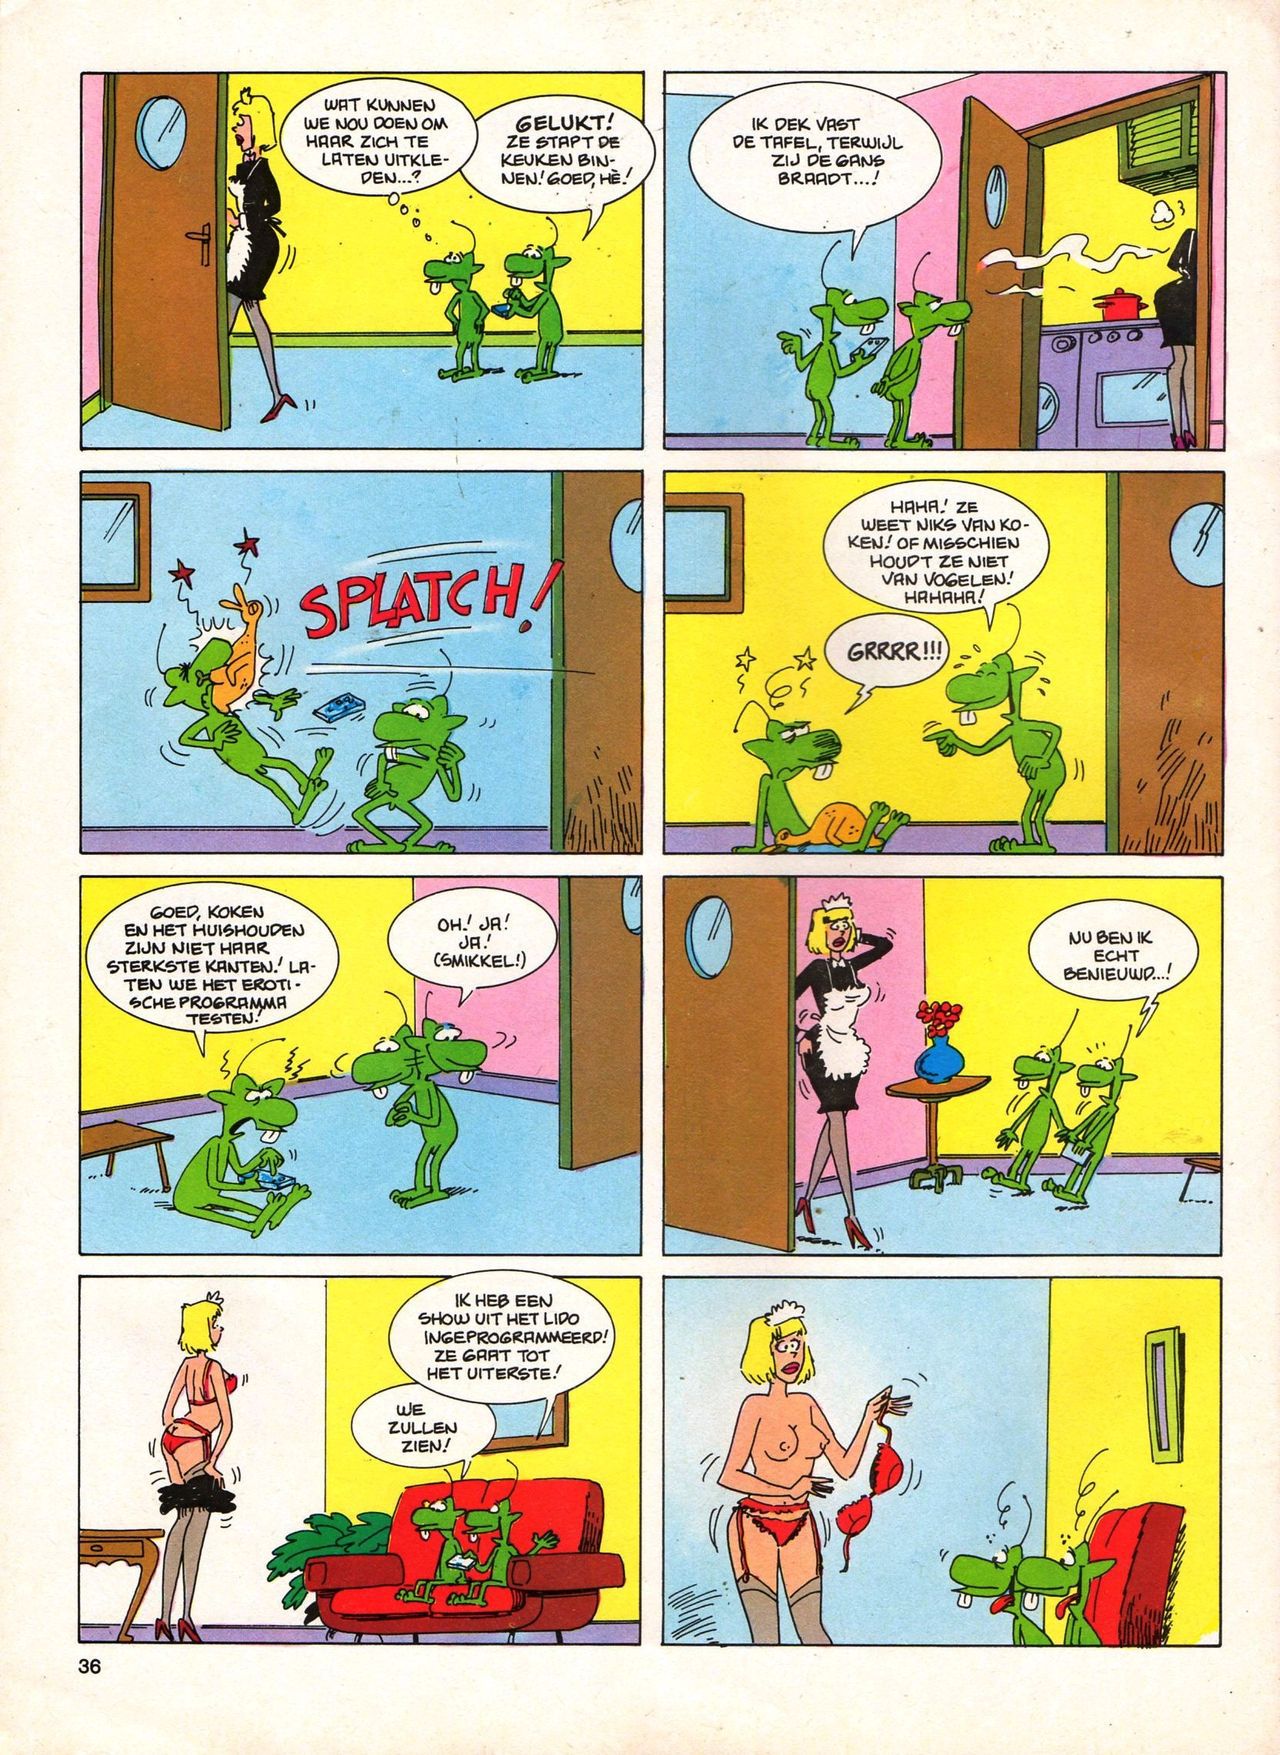 Het Is Groen En Het.. - 04 - Mag Ik Die Ballen.. OH, PARDON! (Dutch) Een oude humoristische serie van Pat Mallet 36